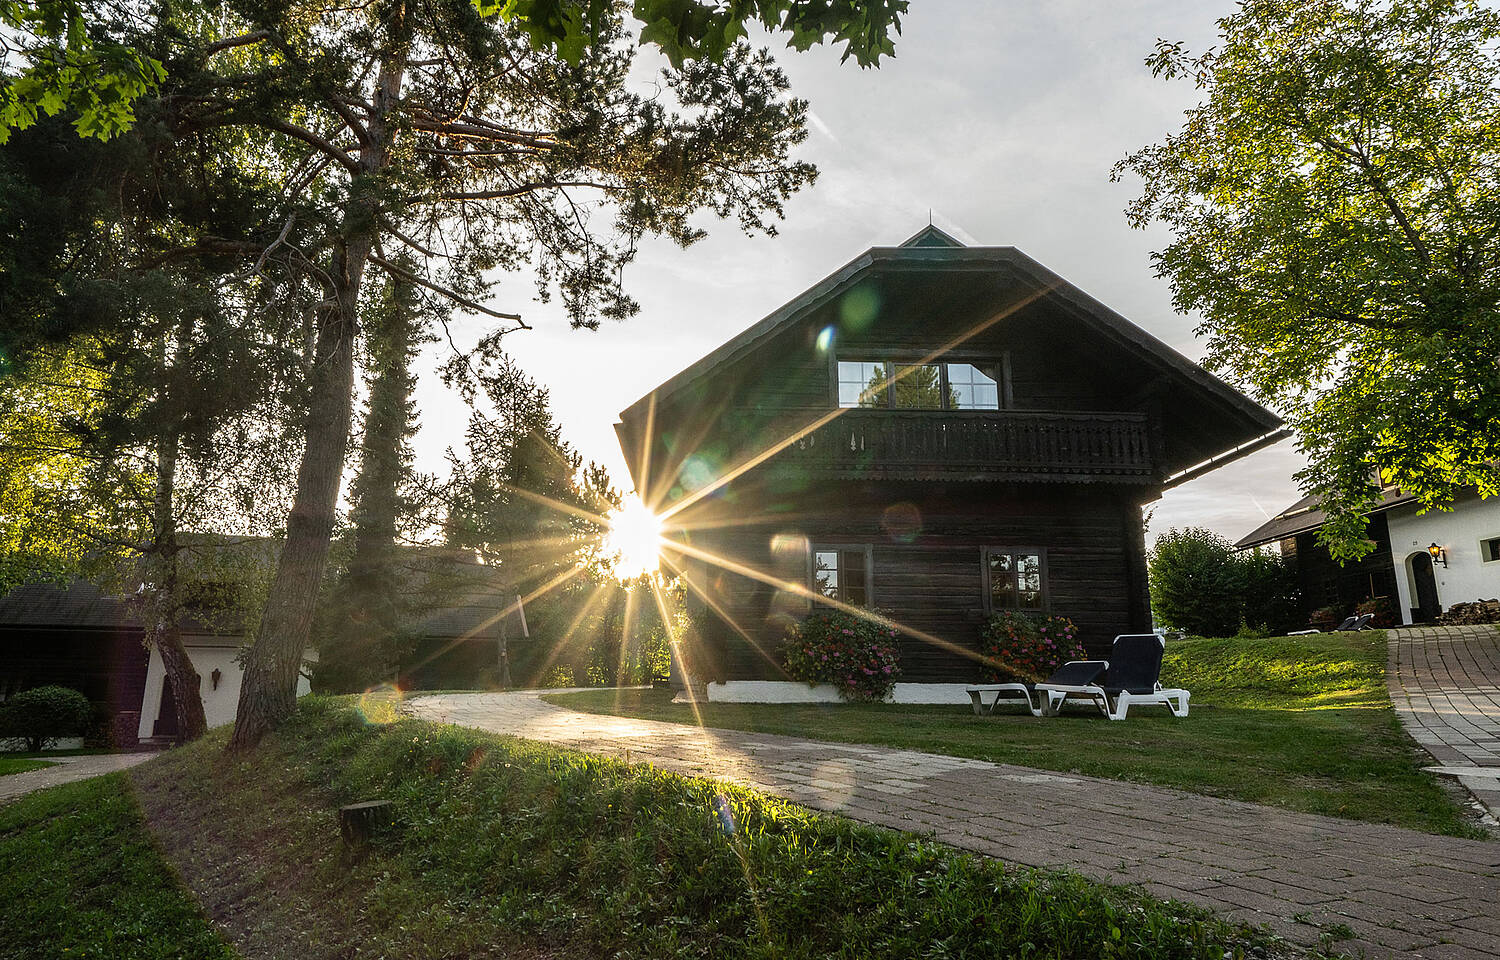 Naturel Hoteldorf Schönleiten ist ein Dorf mit Holzhäusern in der Nähe des Faaker See 